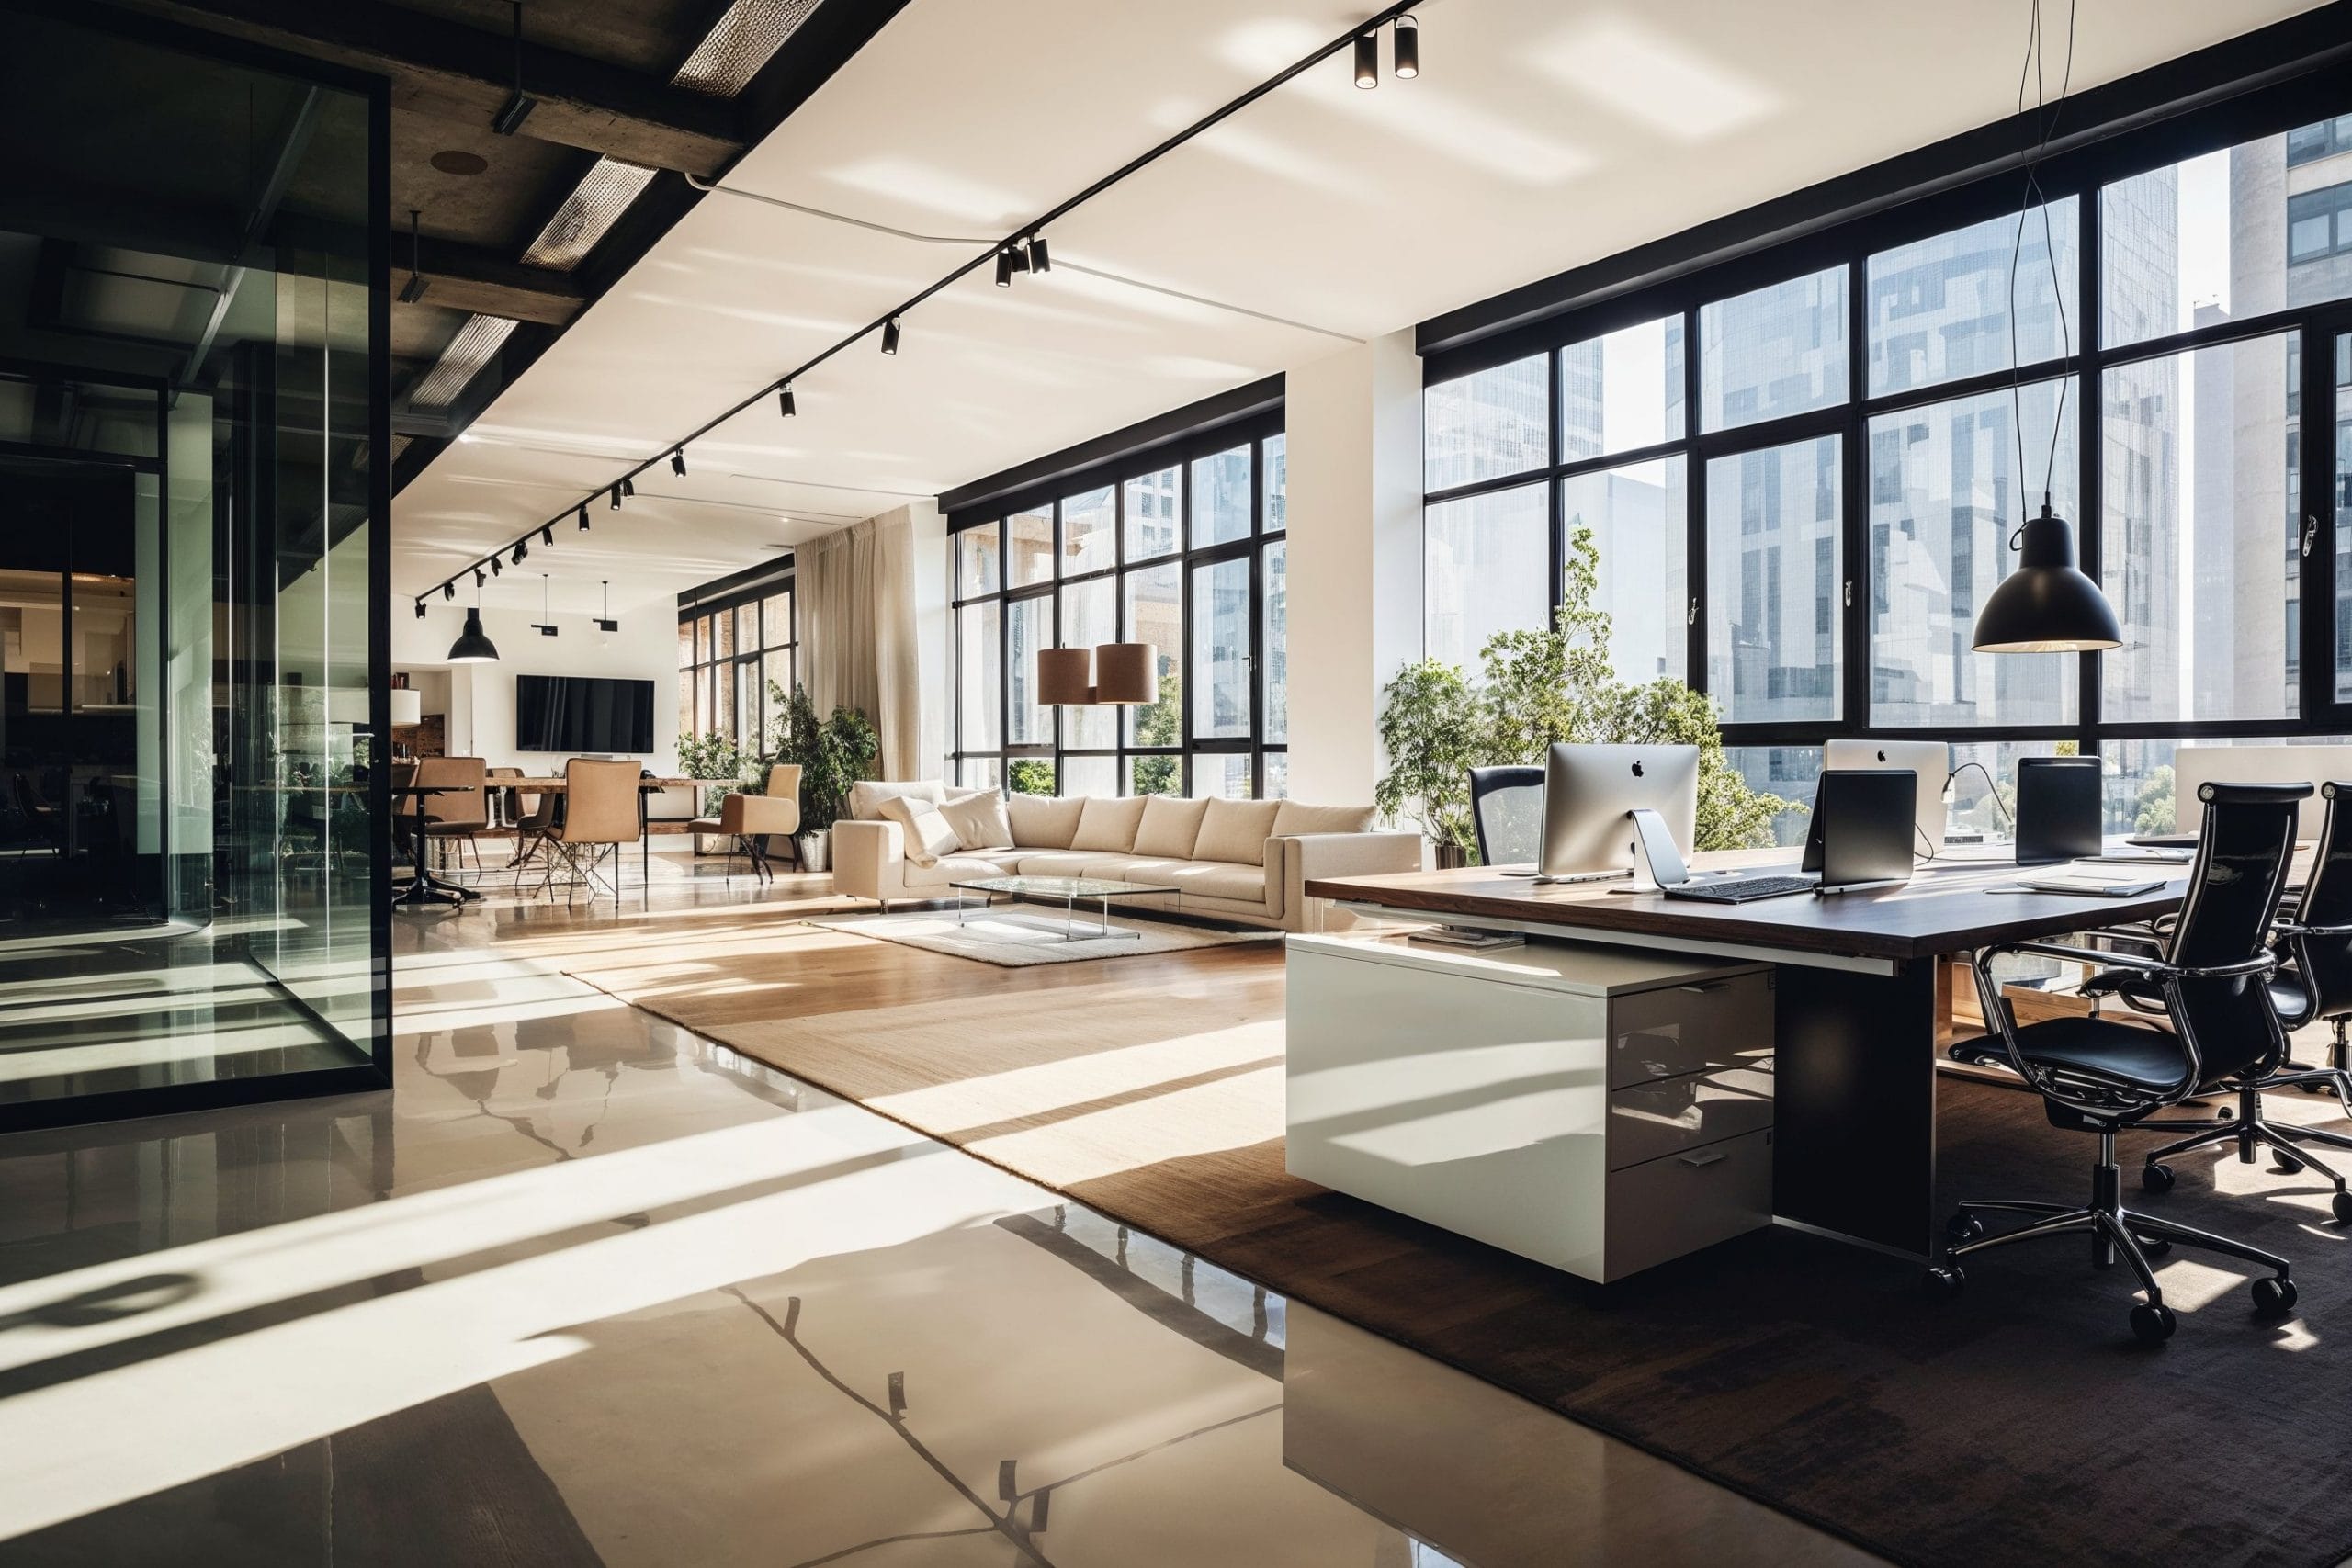 10 Modern Office Design Ideas for an Inspiring Workplace